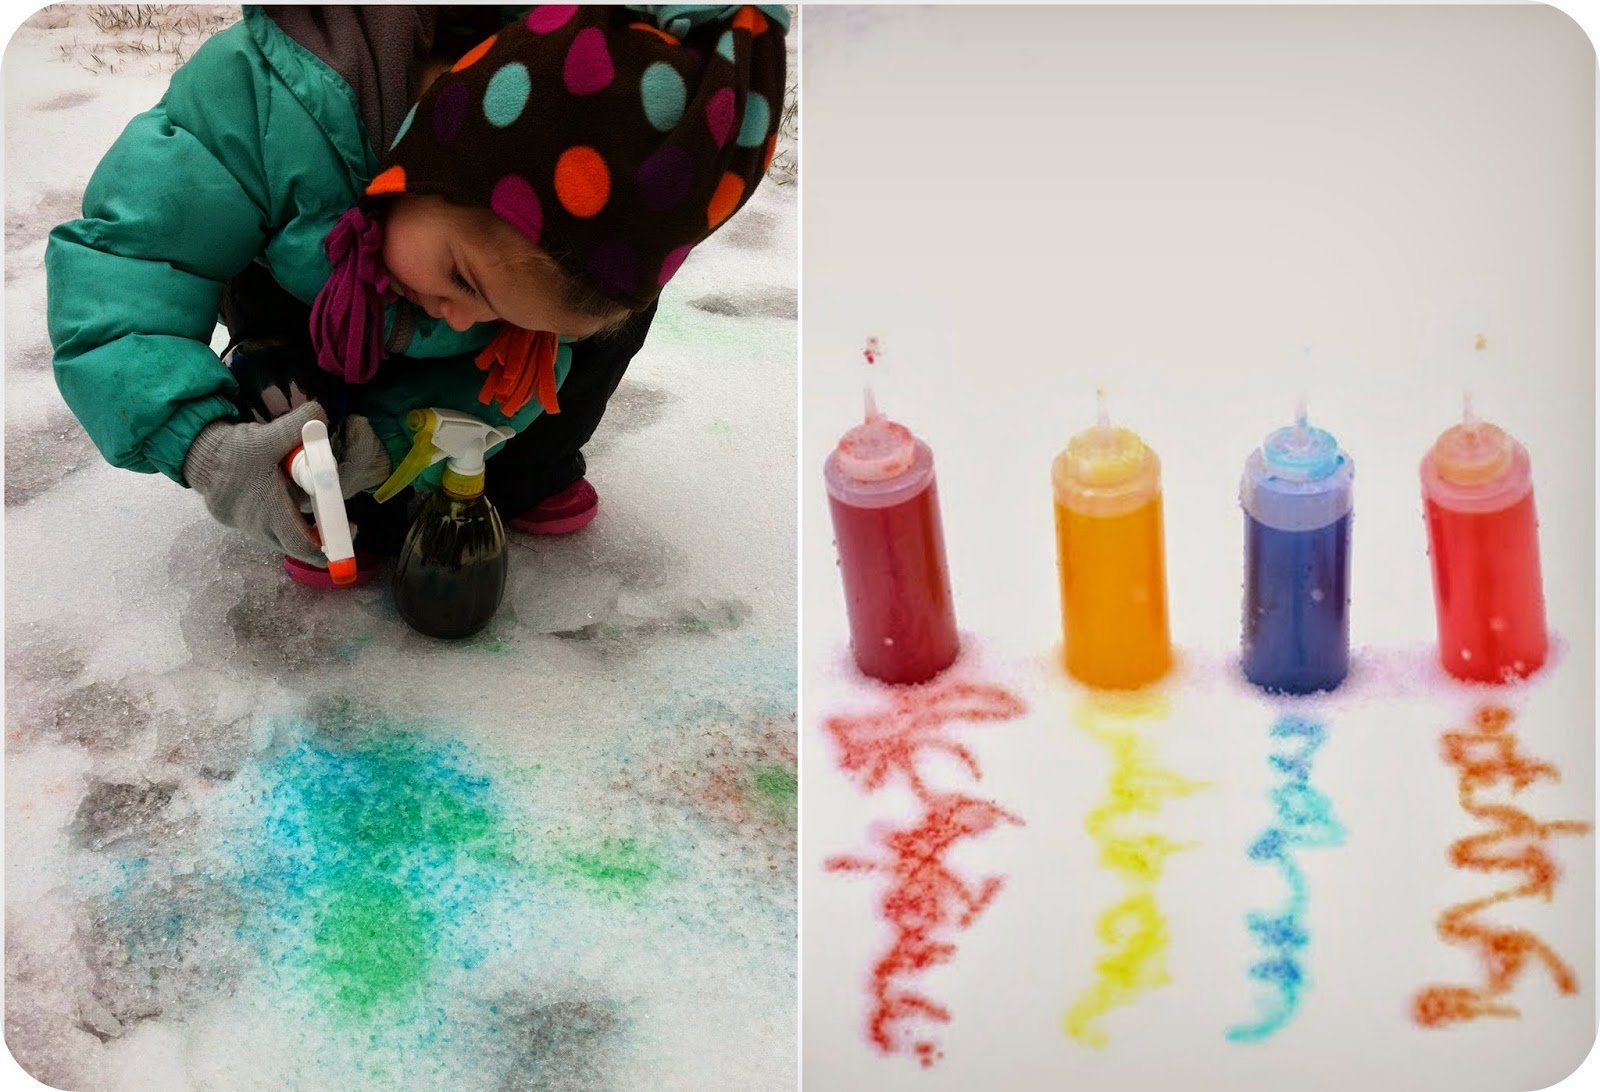 Рисование красками на снегу